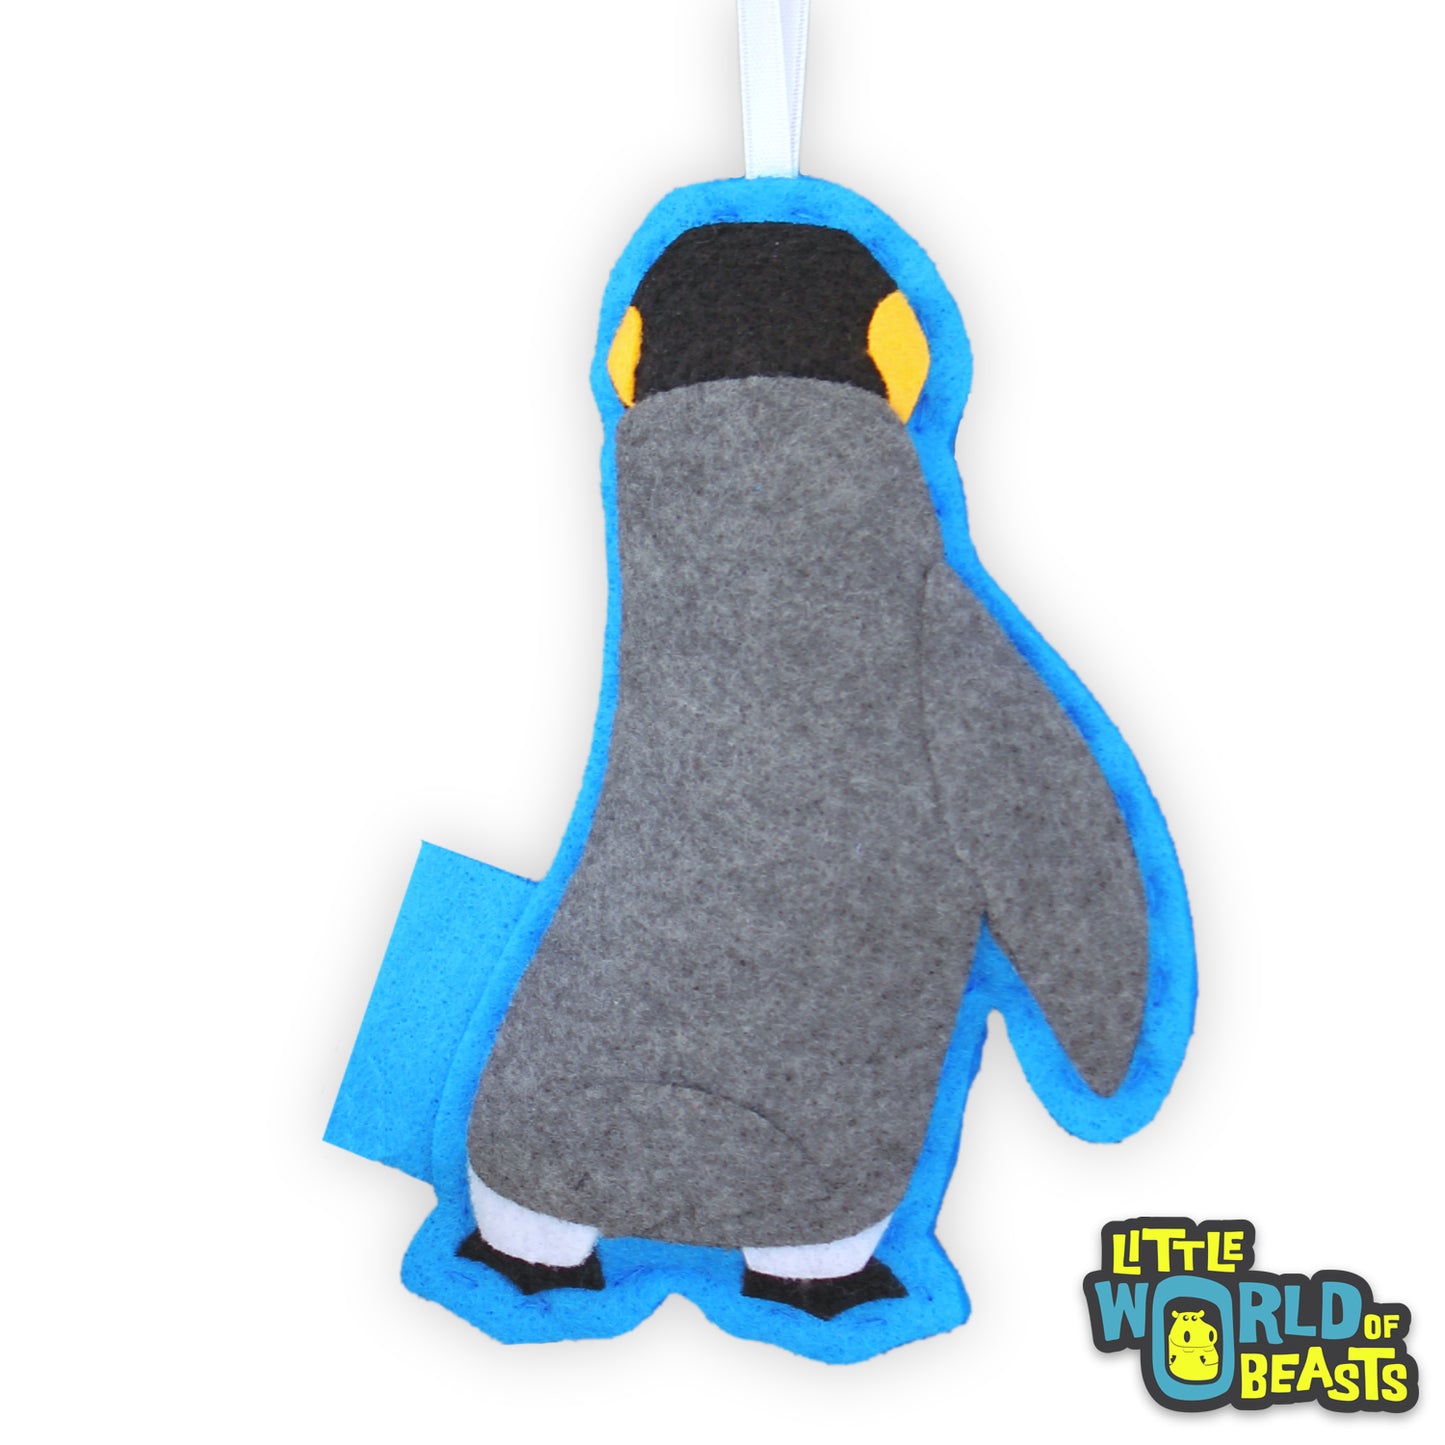 Felt Ornament - King Penguin